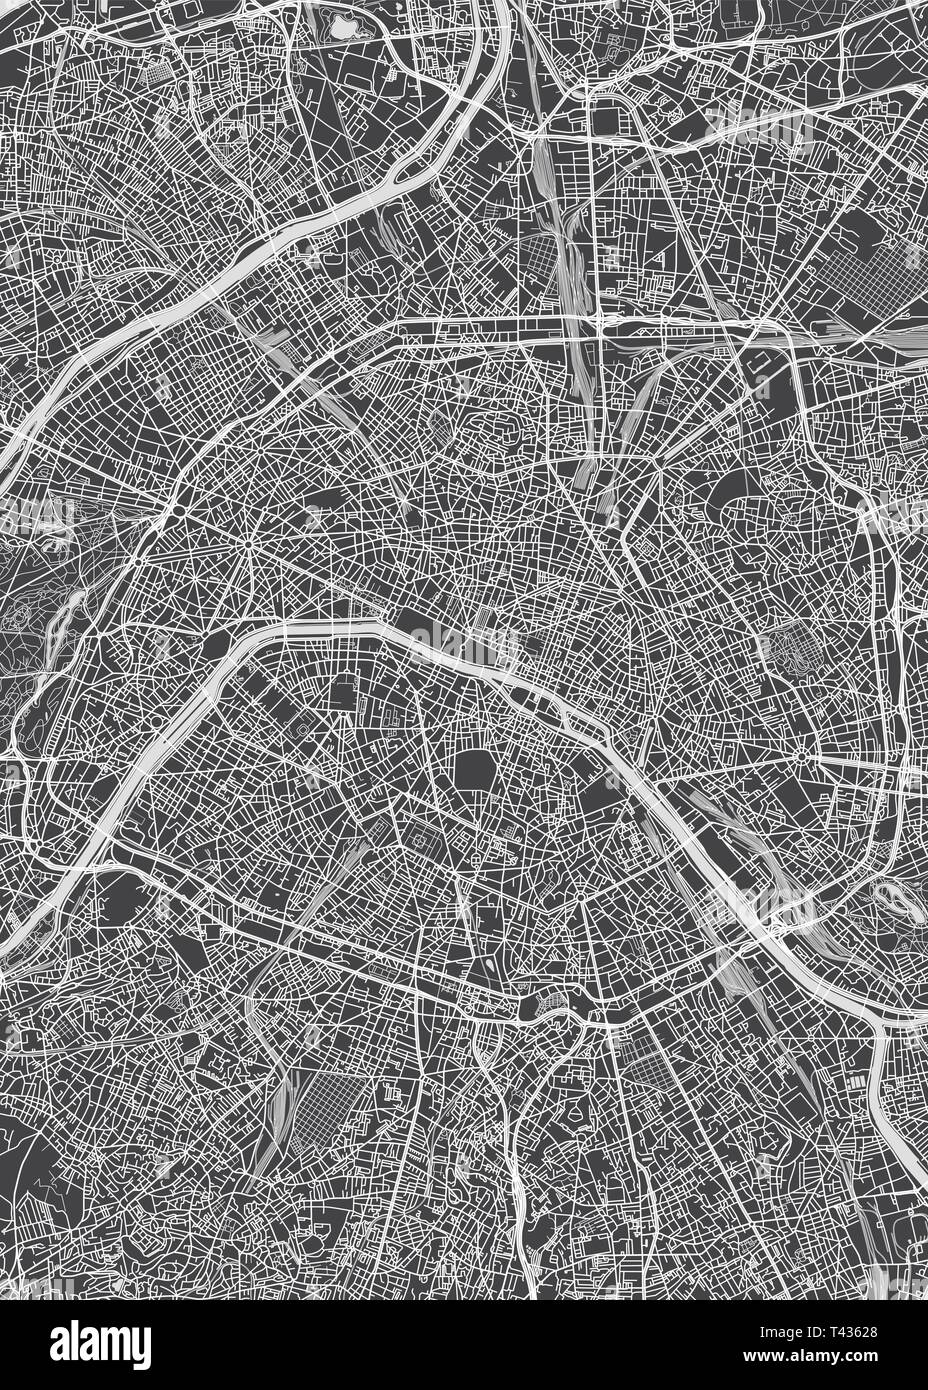 Plan de ville Paris, monochrome plan détaillé, vector illustration Illustration de Vecteur